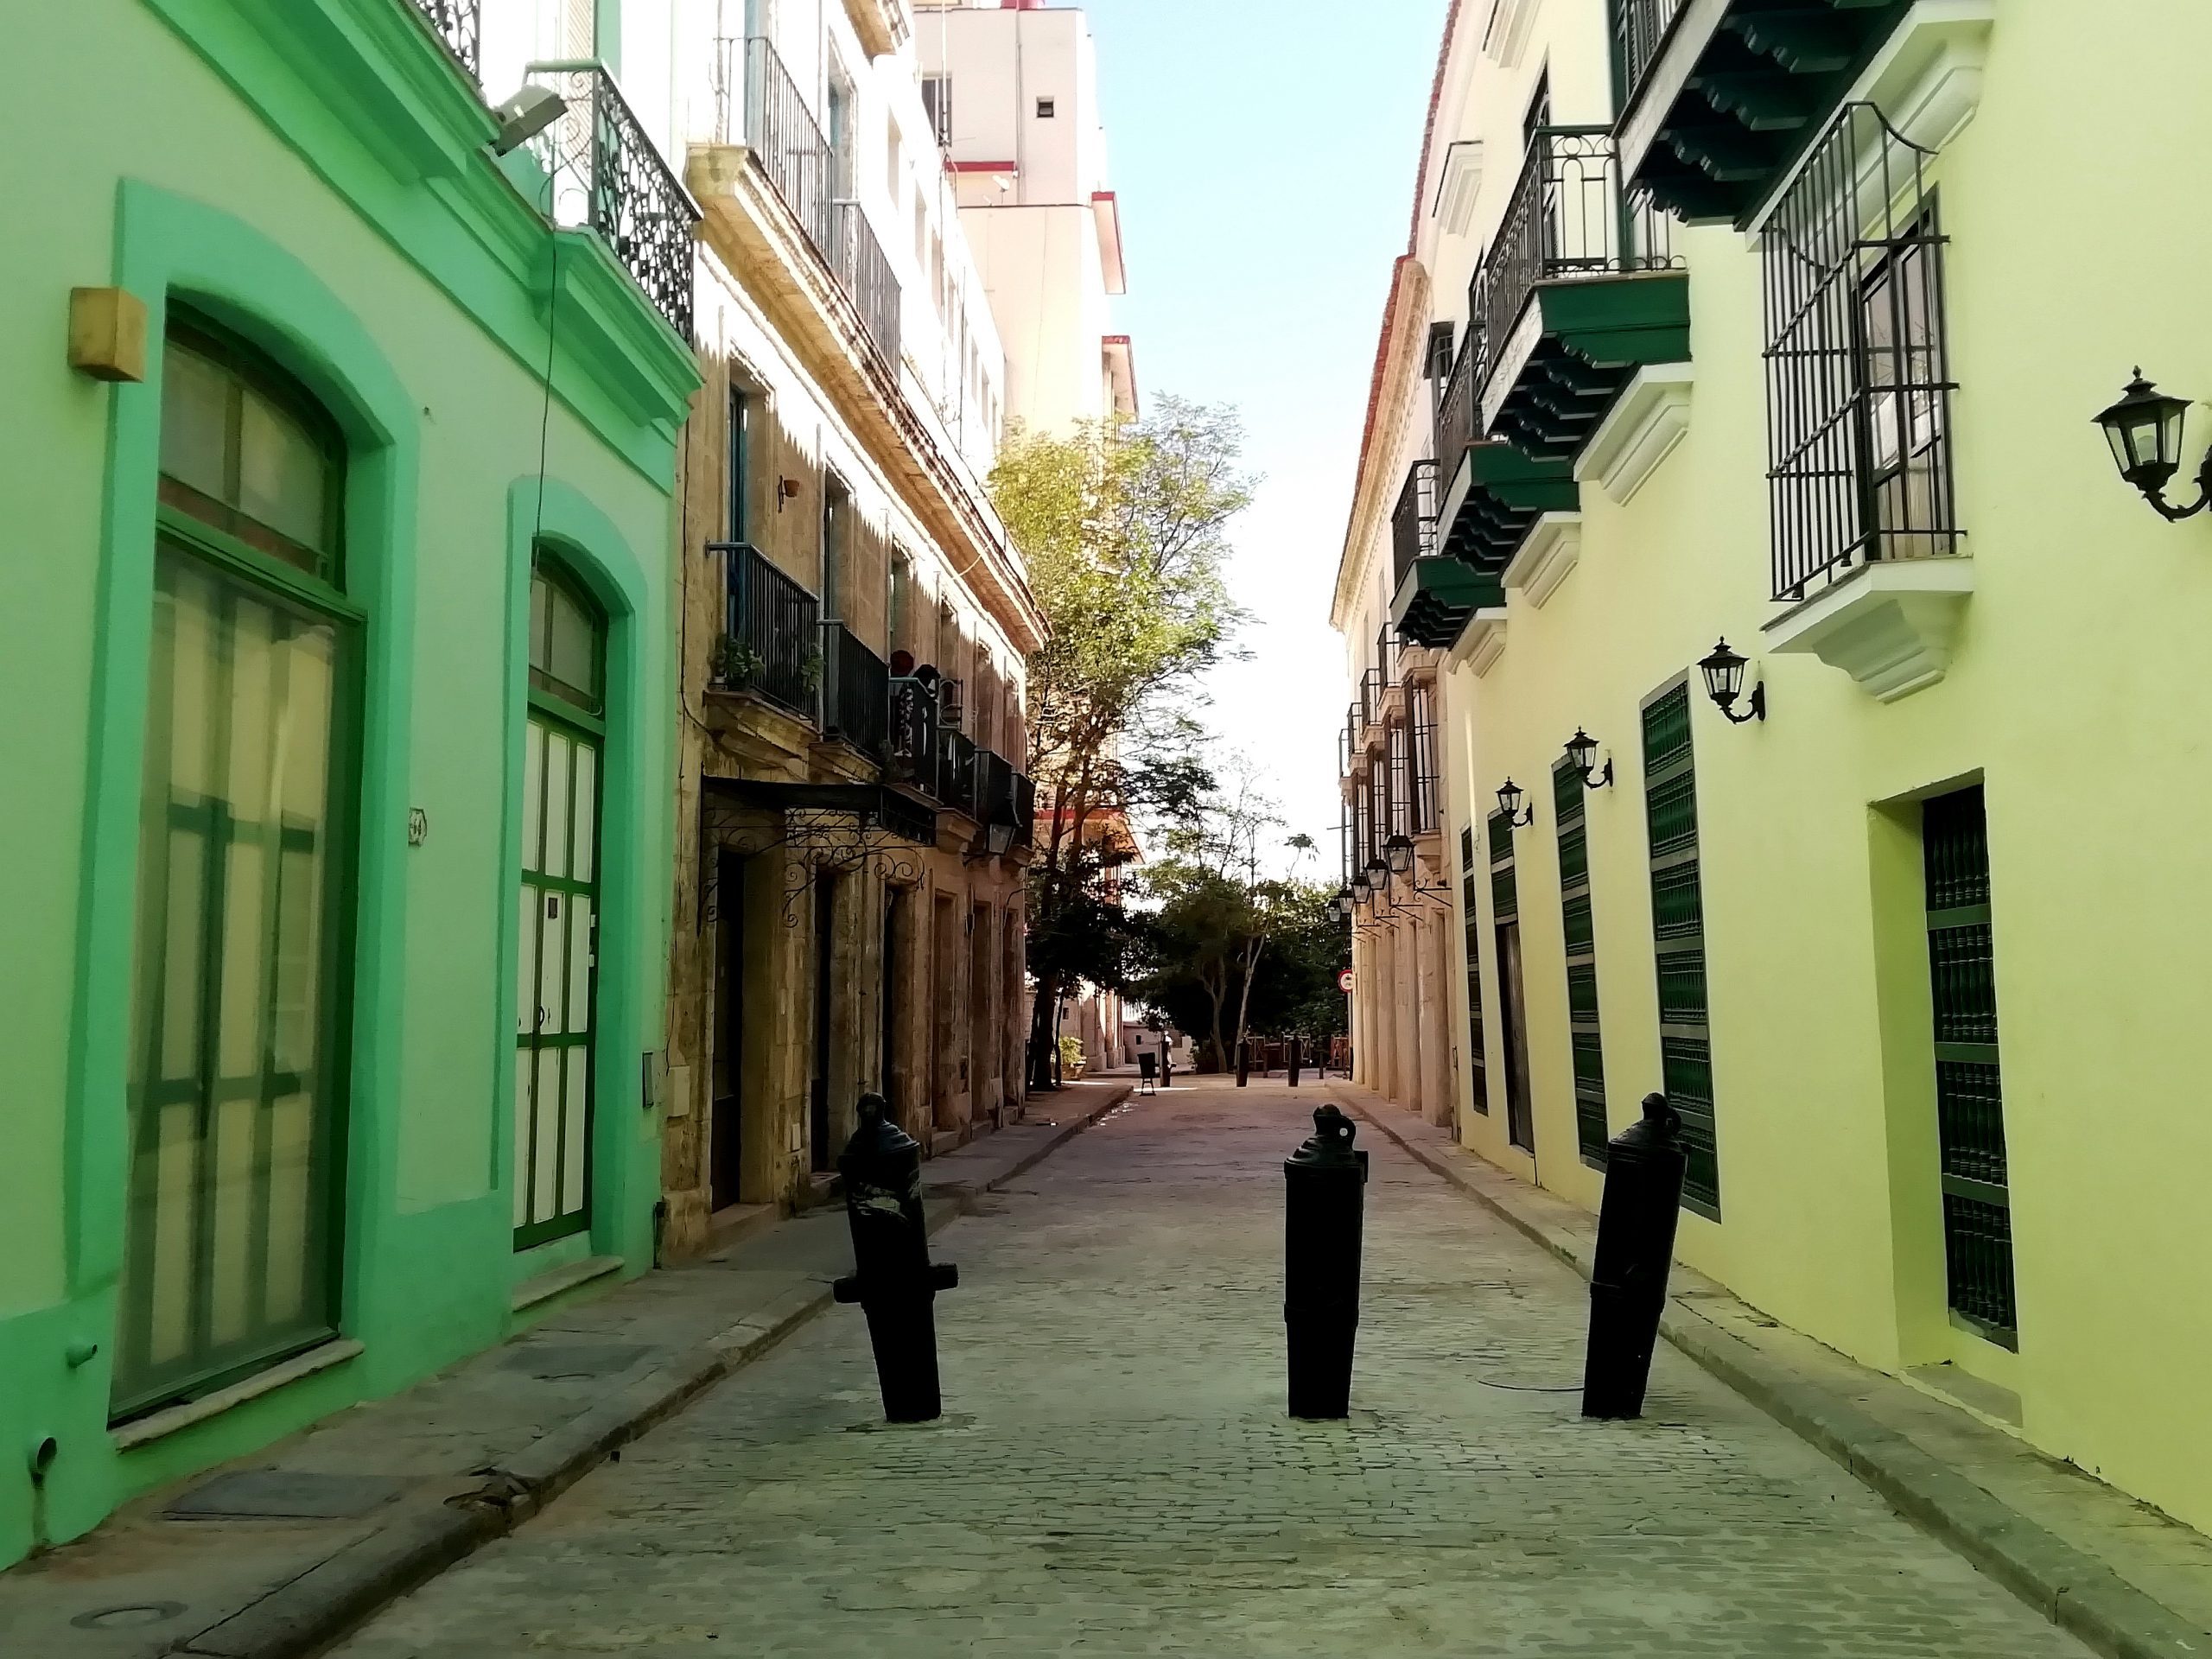 La calle de la Obrapía (calles de La Habana)